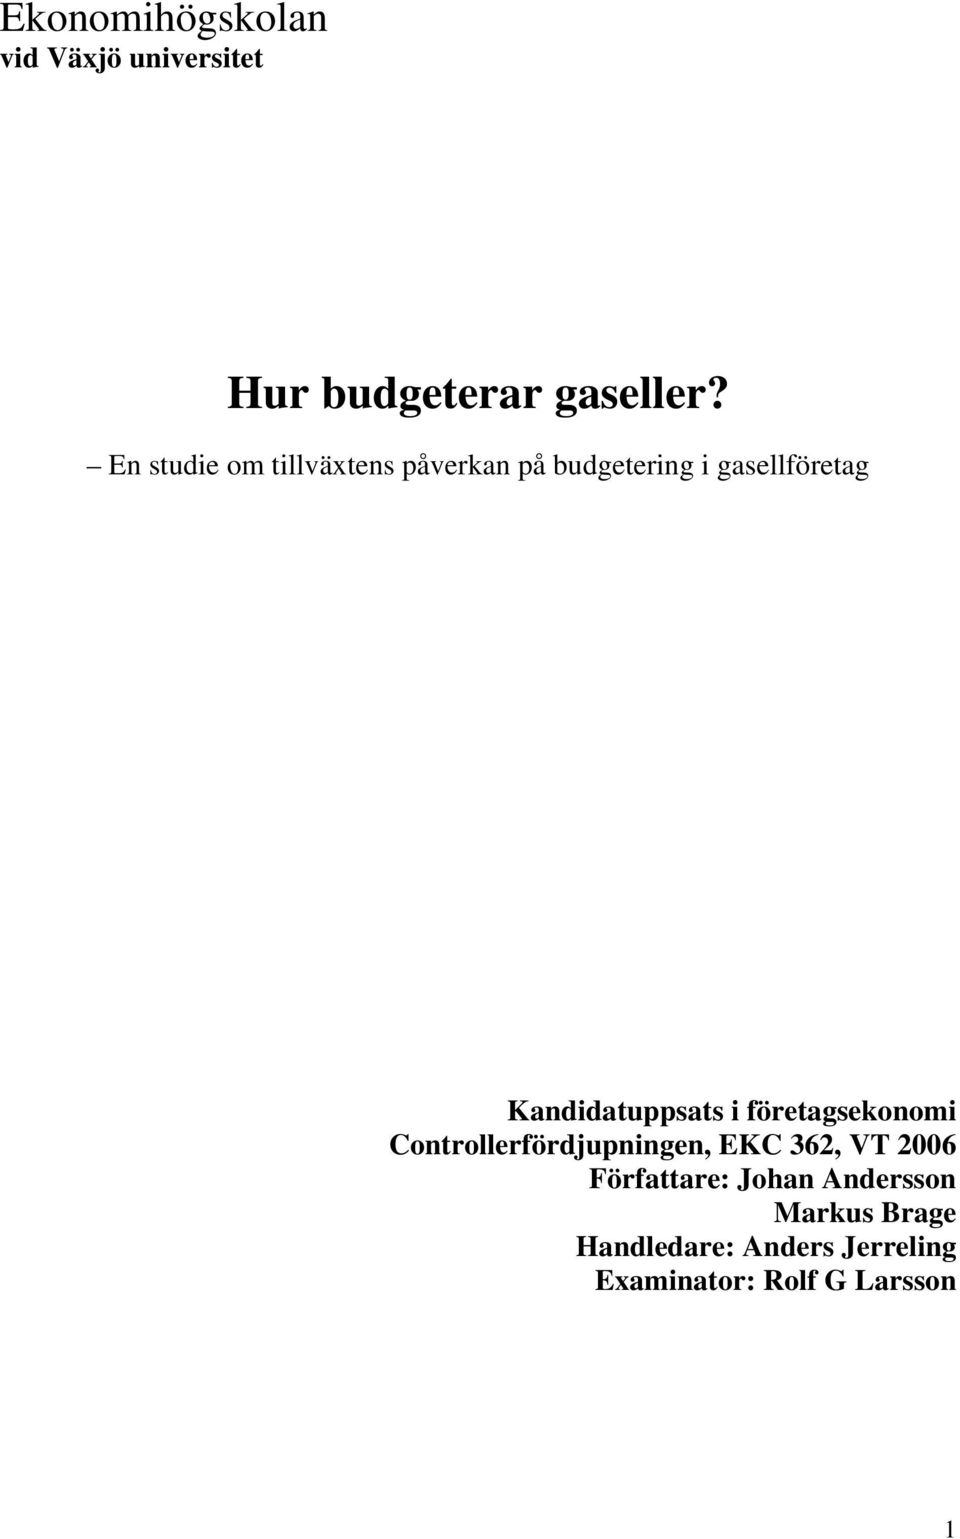 Kandidatuppsats i företagsekonomi Controllerfördjupningen, EKC 362, VT 2006